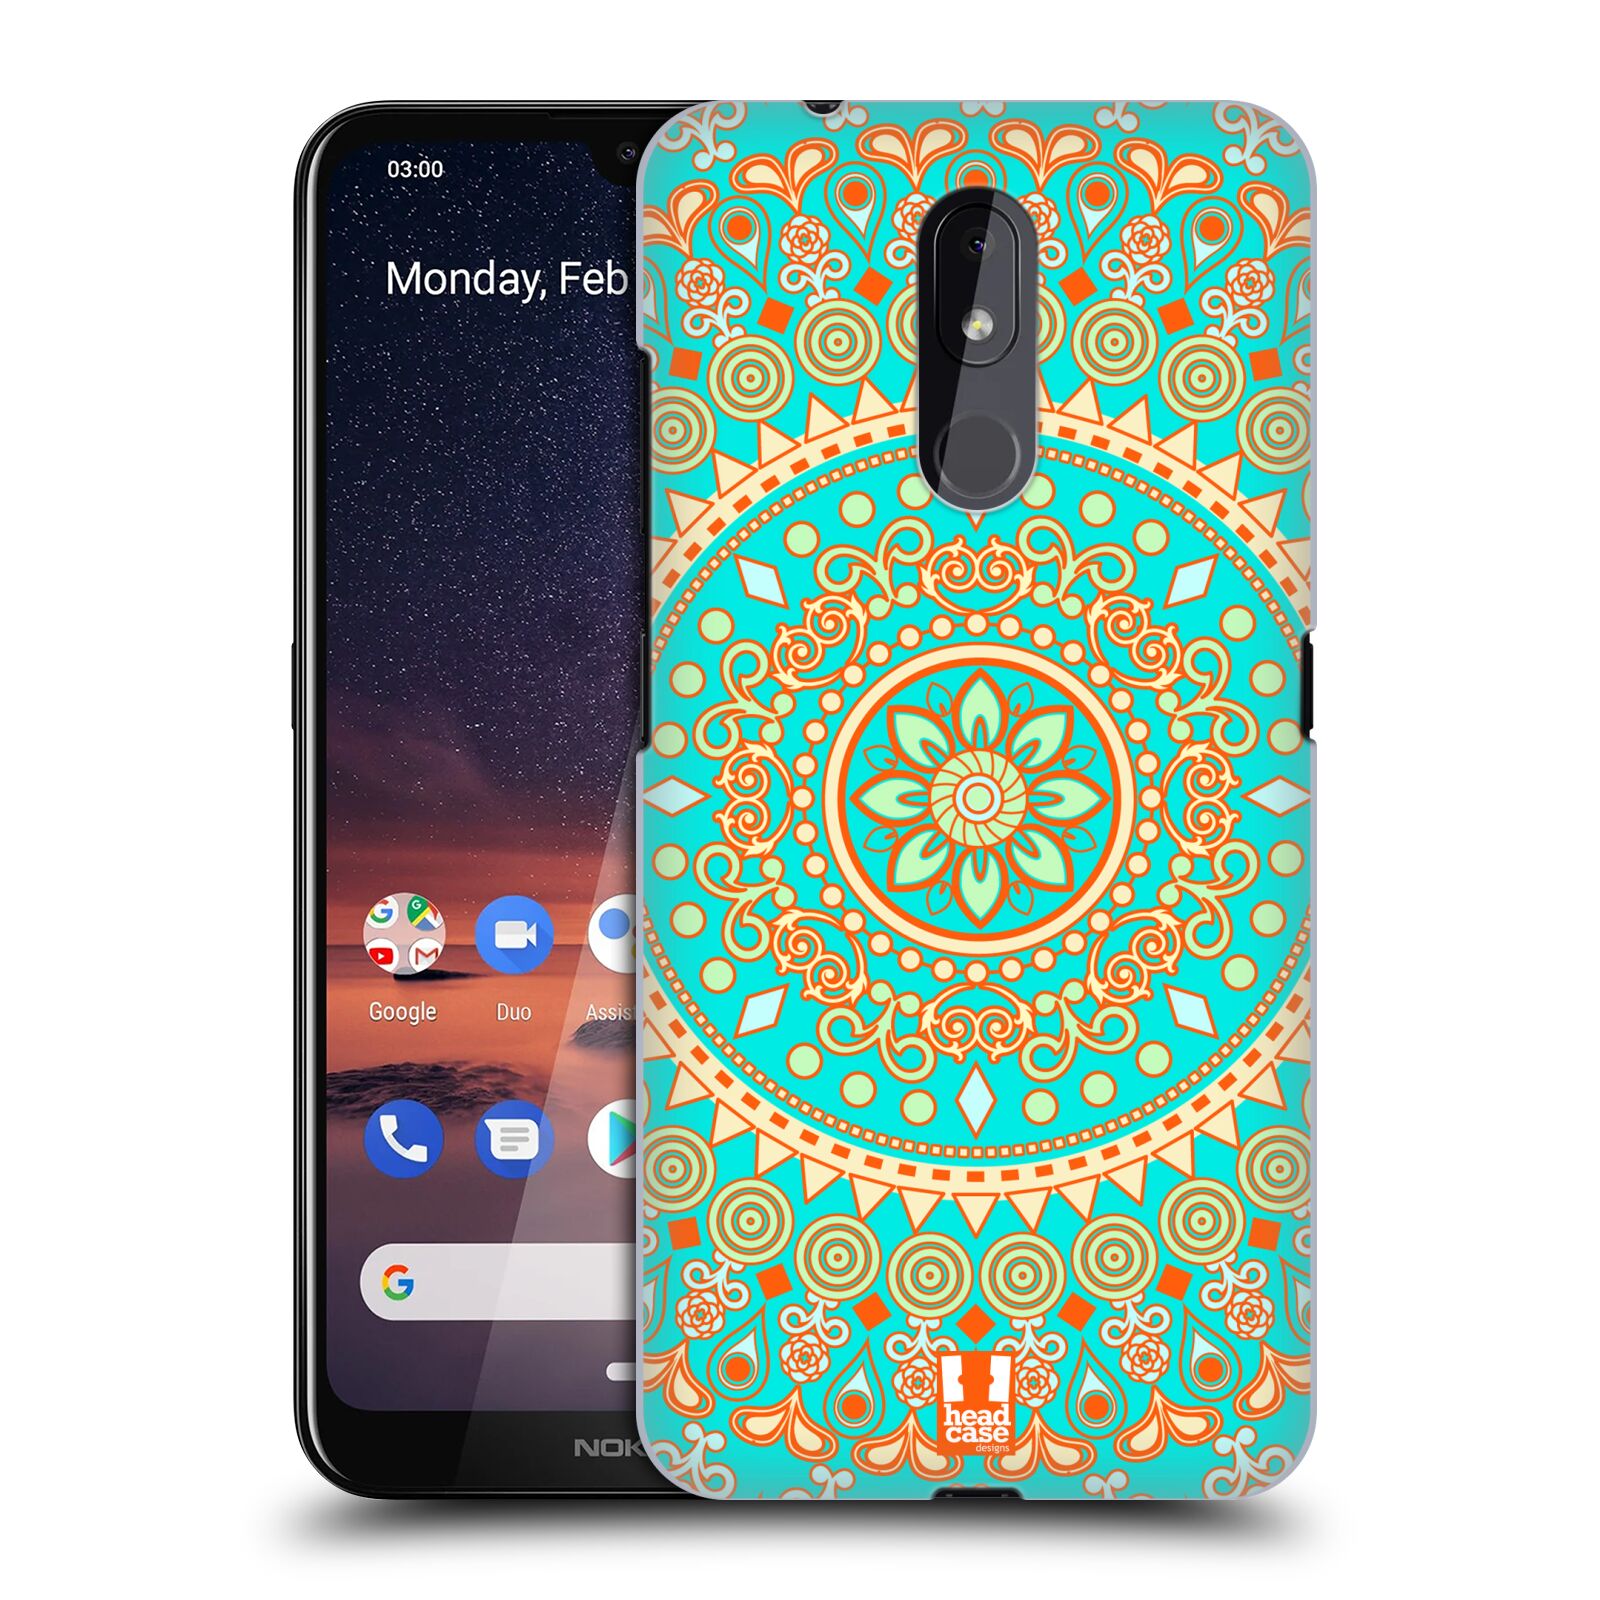 Pouzdro na mobil Nokia 3.2 - HEAD CASE - vzor Indie Mandala slunce barevný motiv TYRKYSOVÁ, ZELENÁ